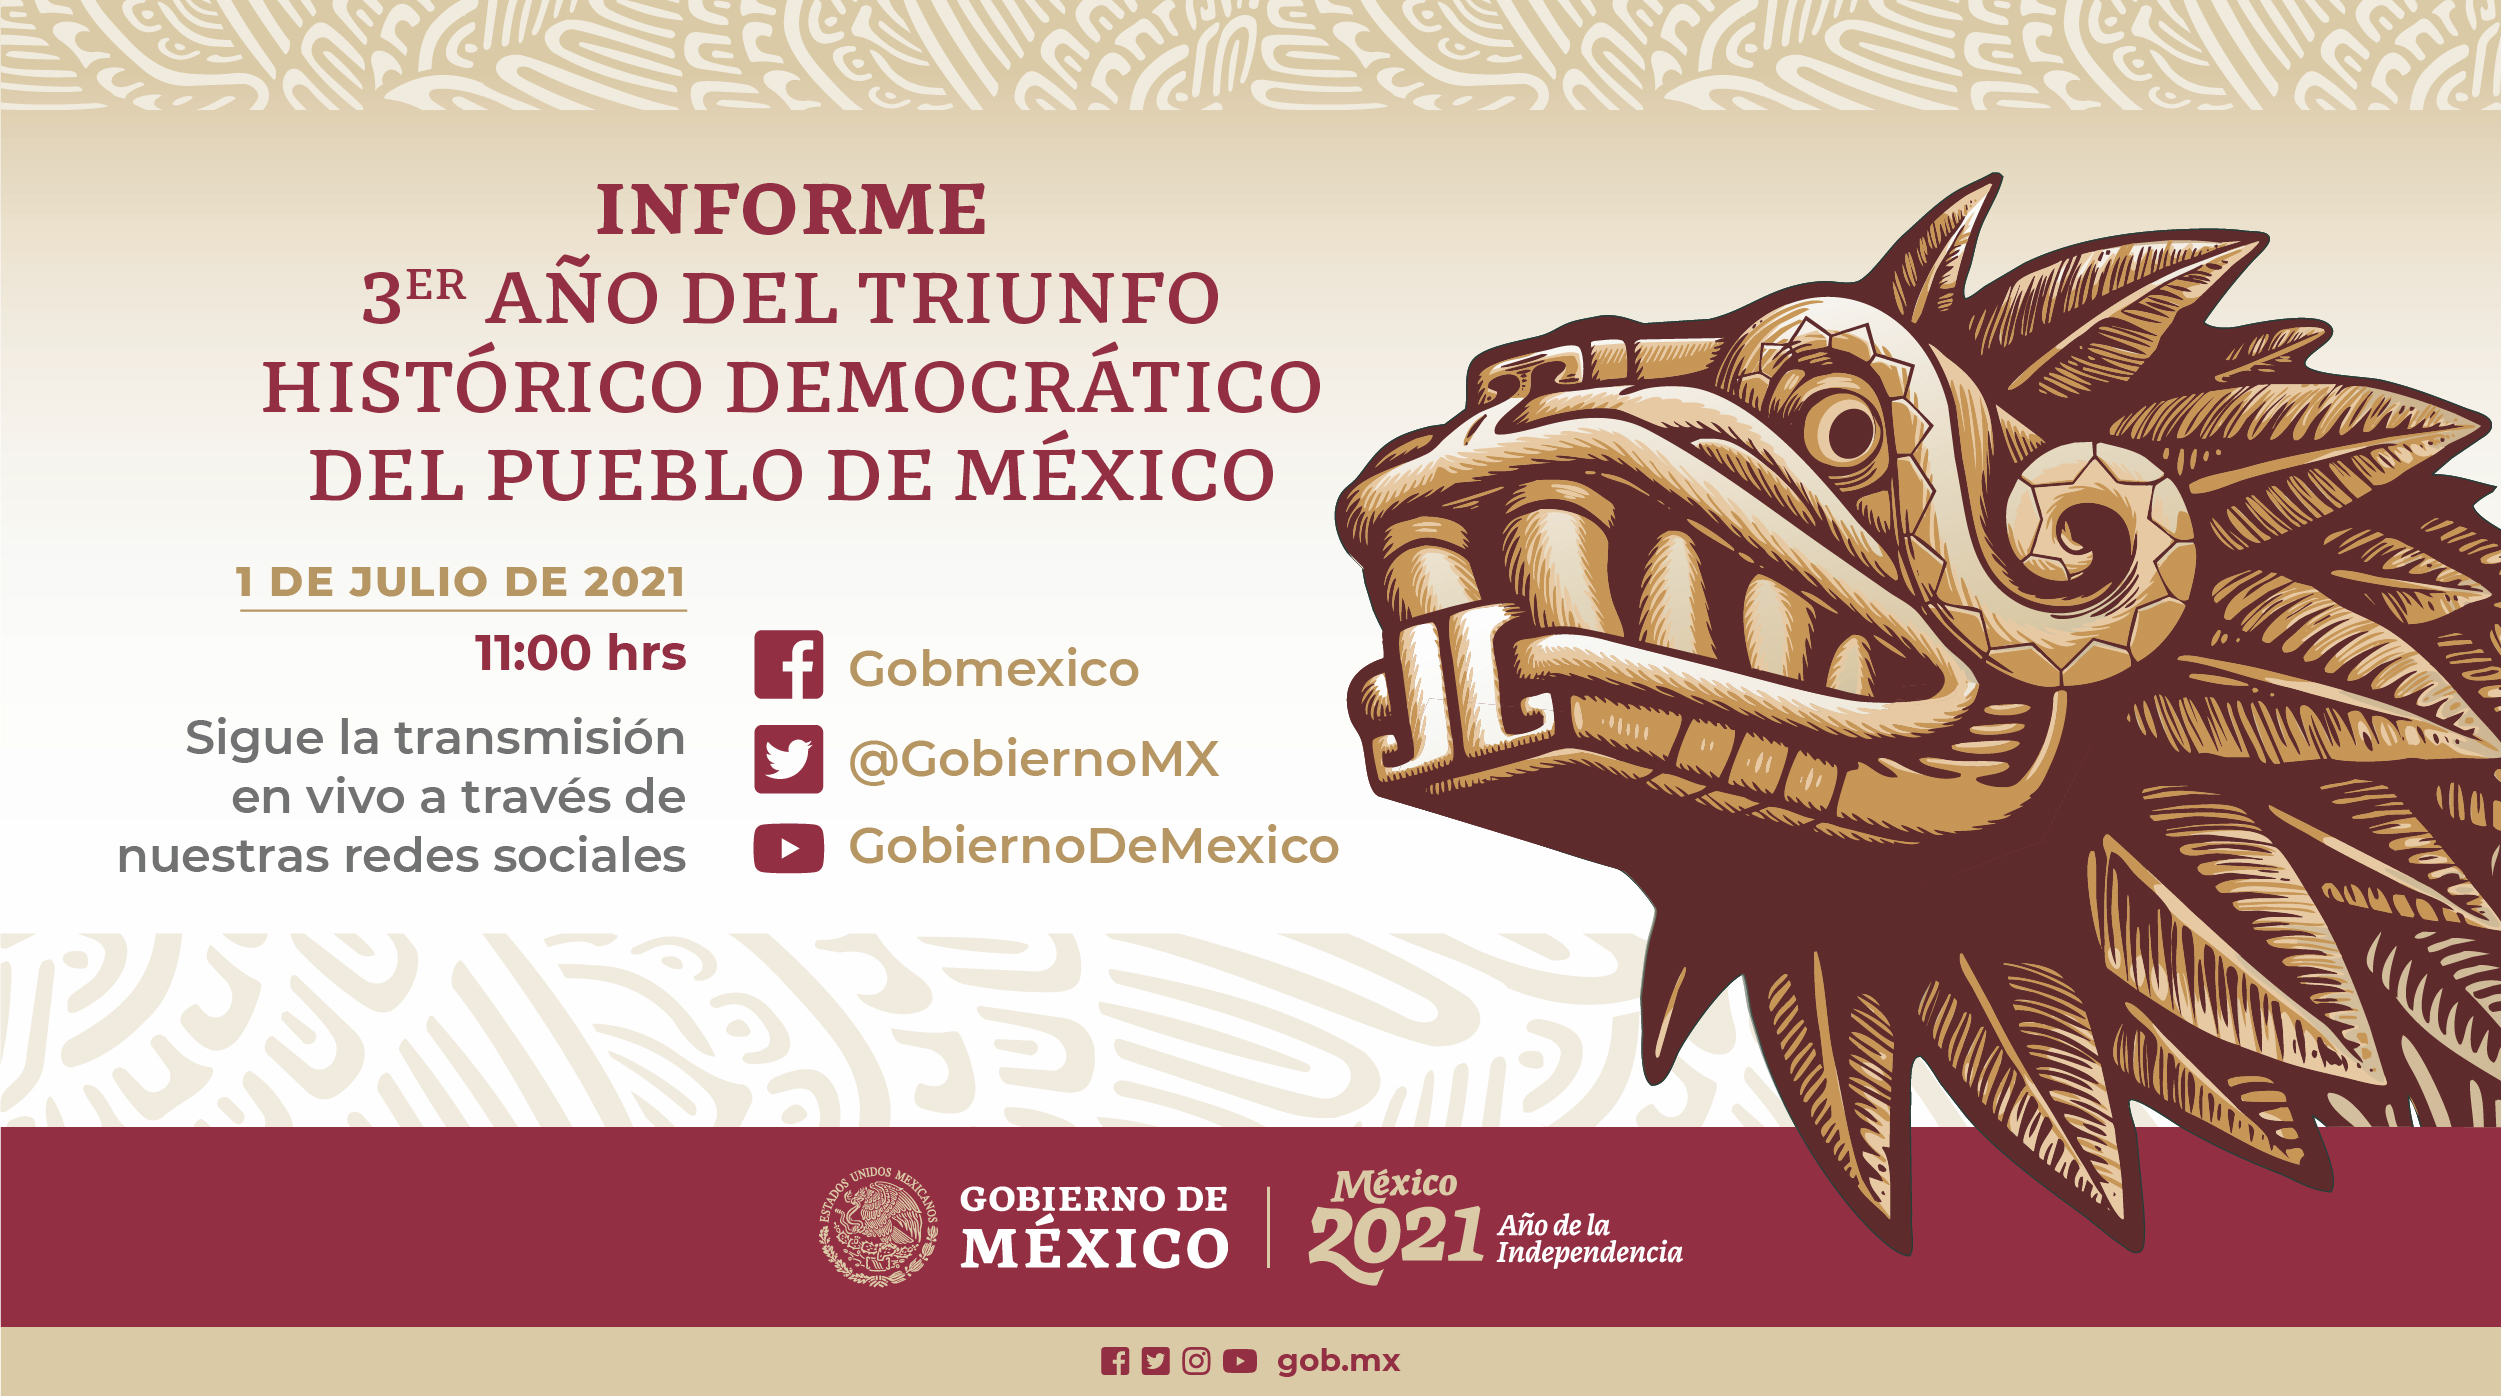 Informe por el Tercer Año del Triunfo Histórico Democrático del Pueblo de México.